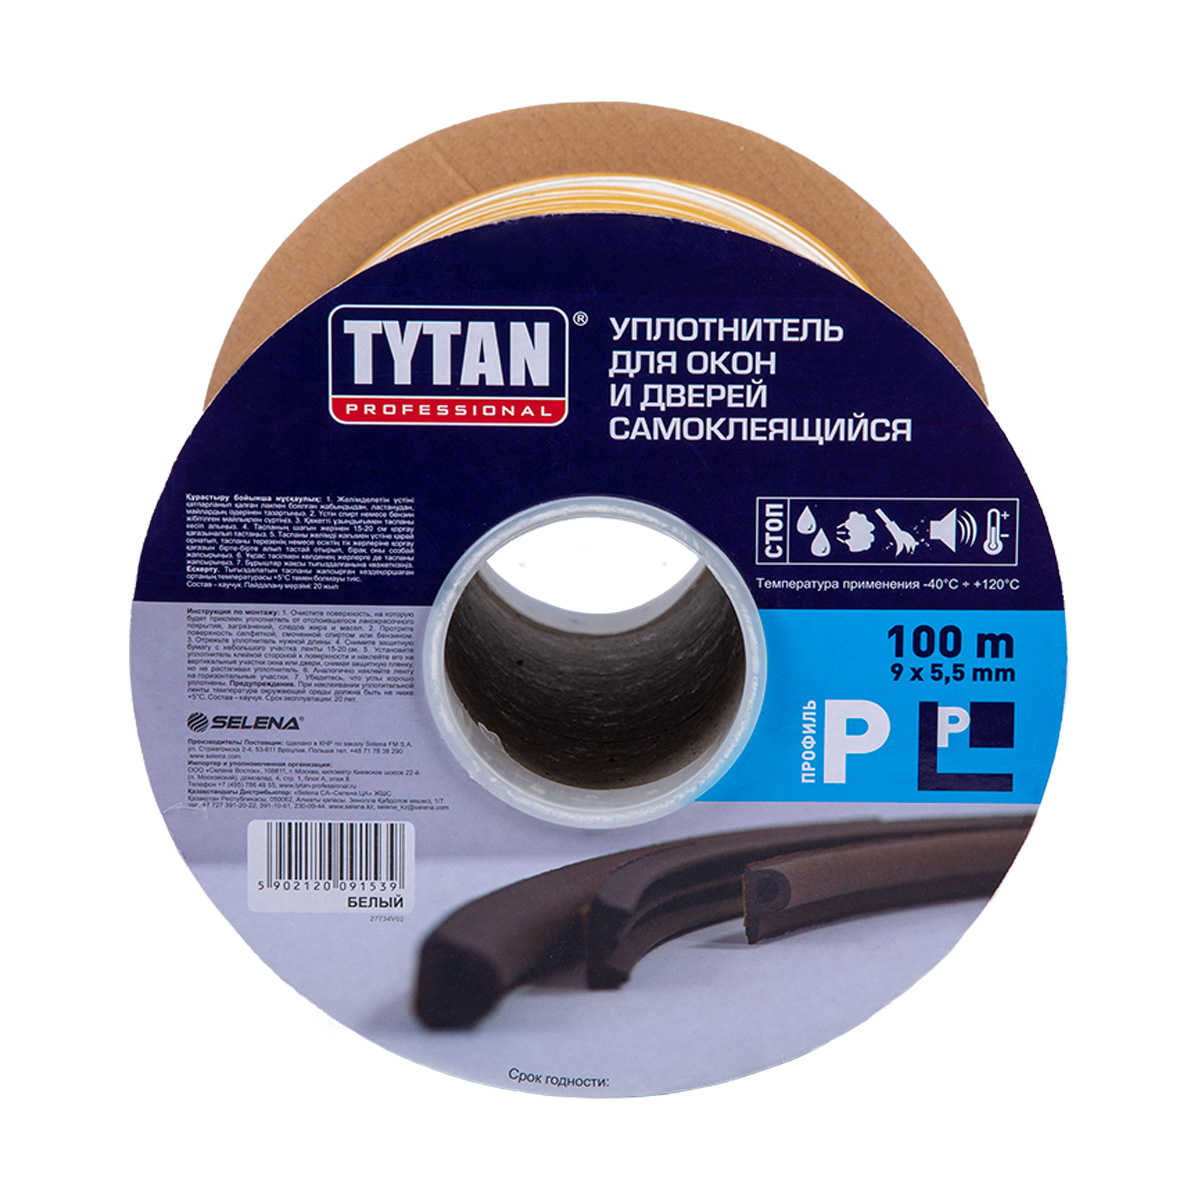 Уплотнитель Tytan Professional, P-профиль 9 x 5,5 мм, бухта 100 м, белый